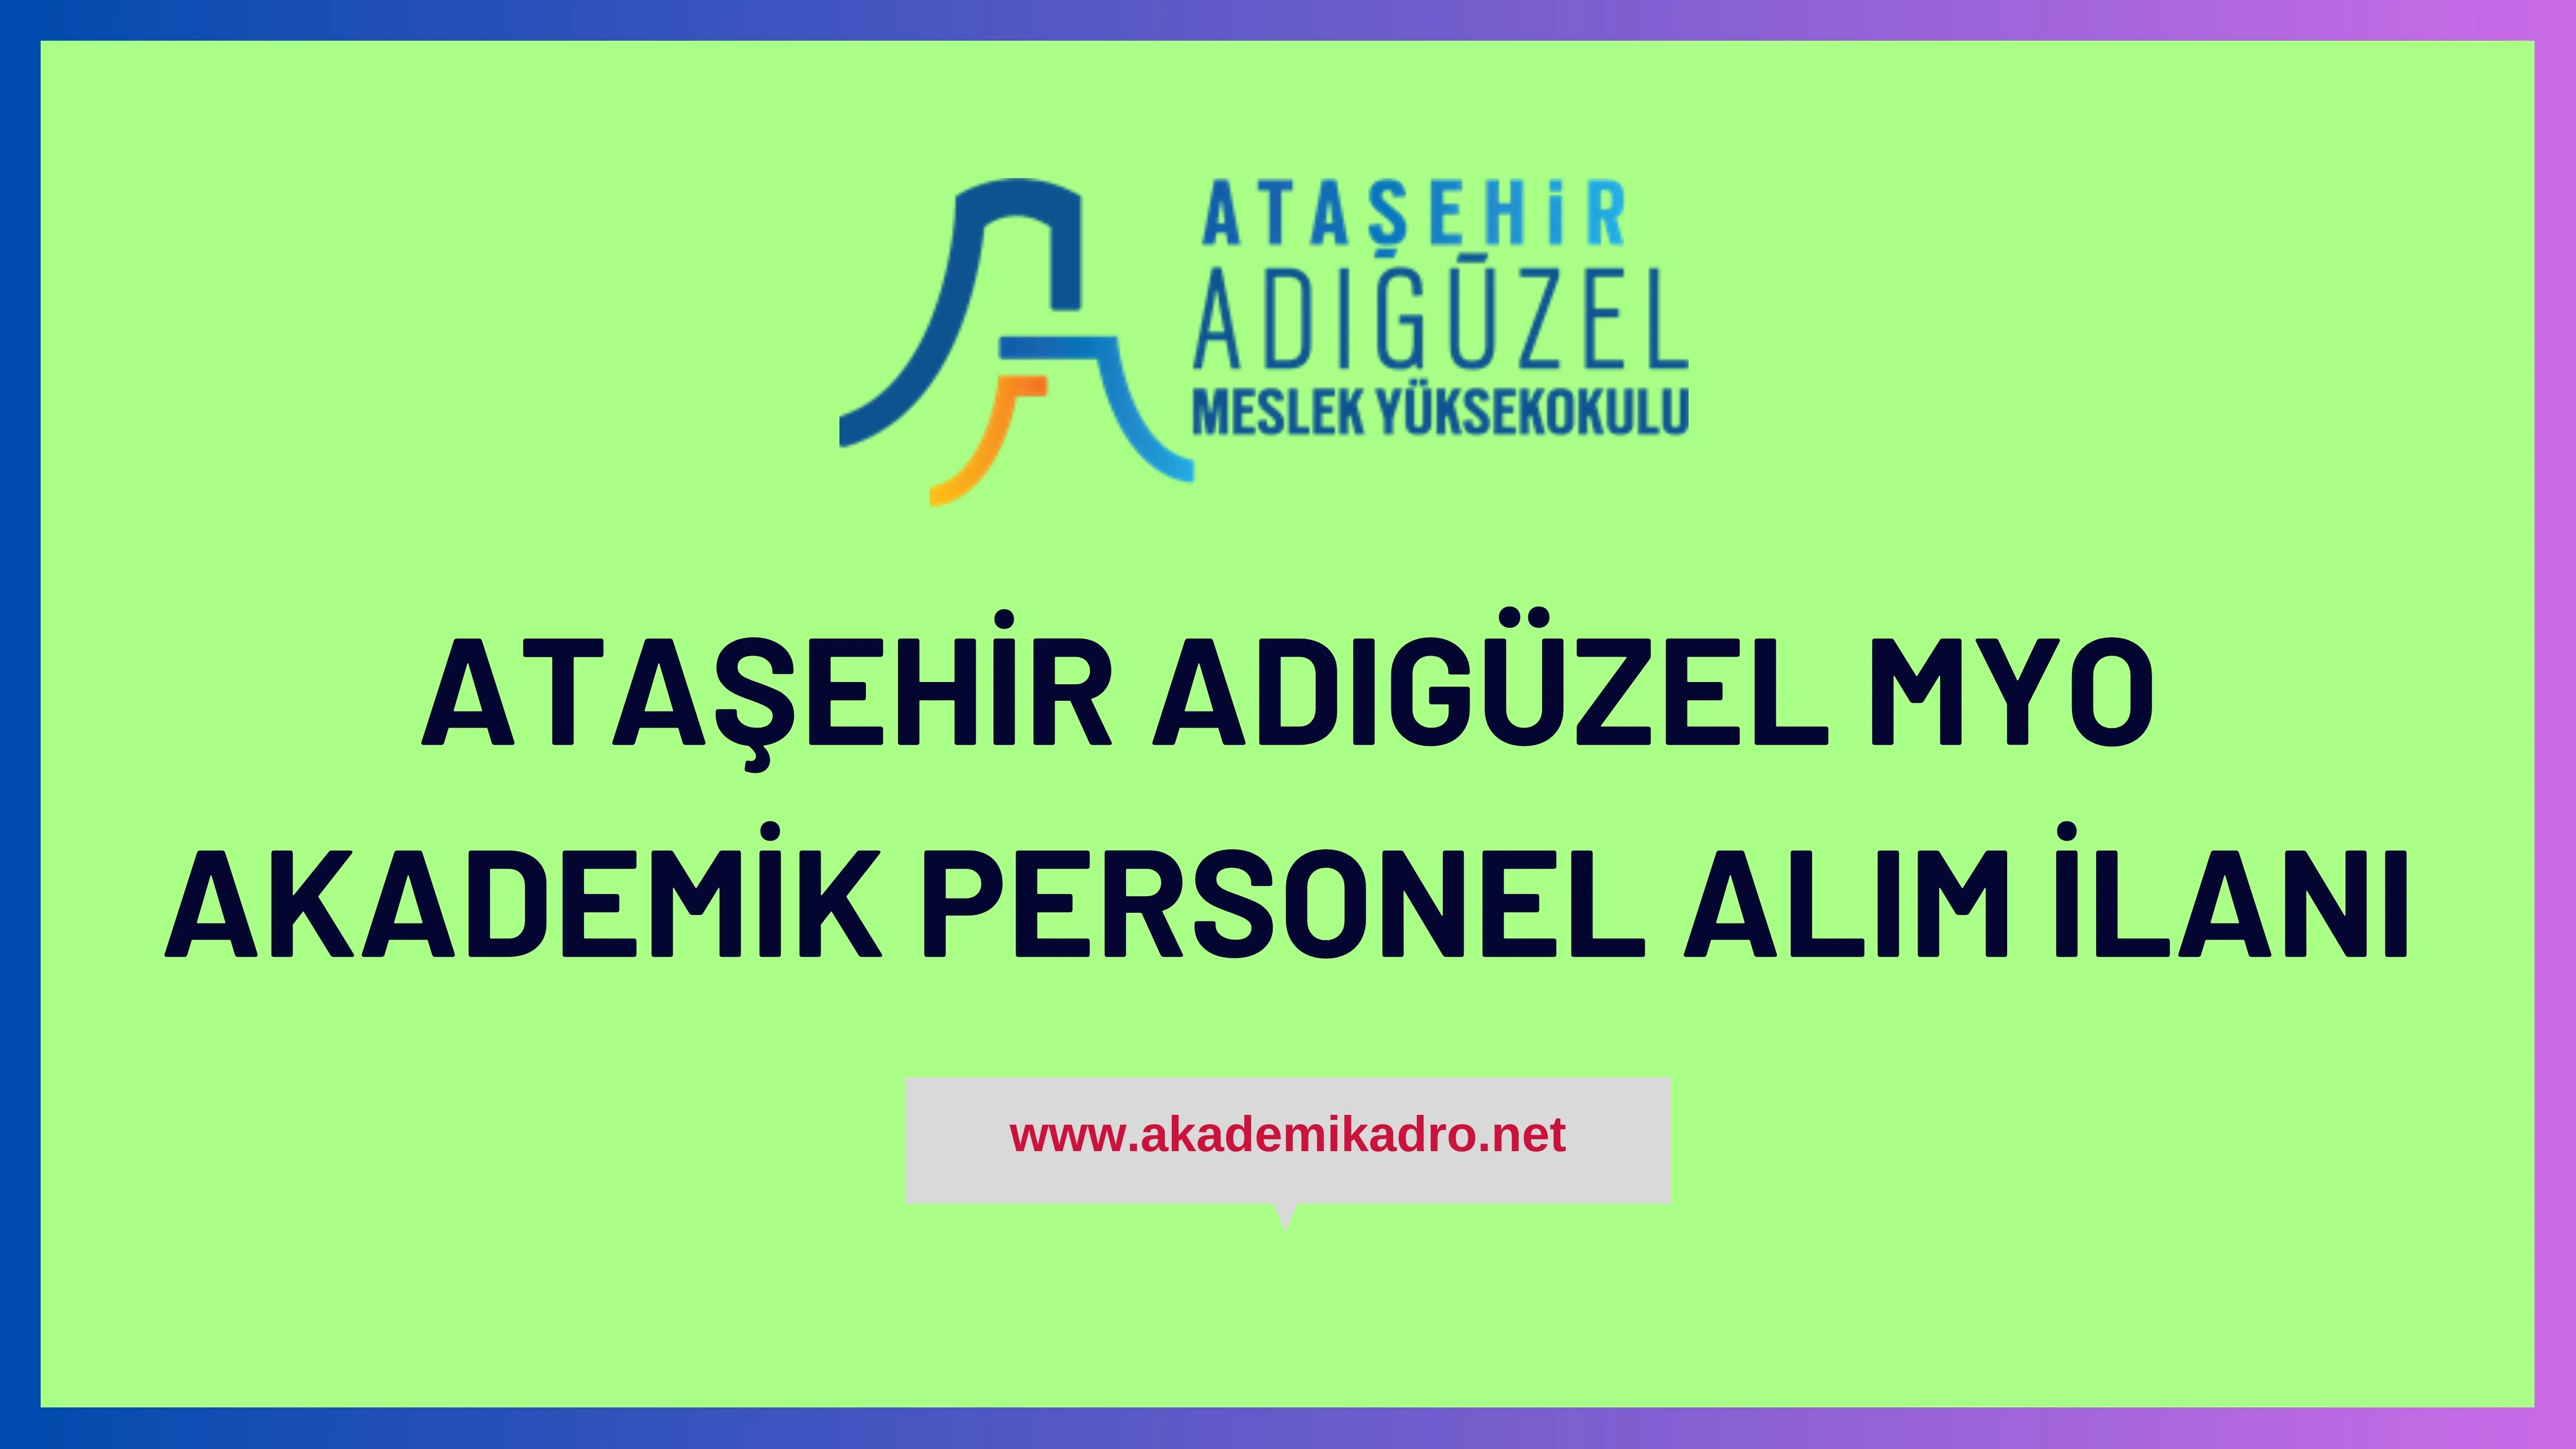 Ataşehir Adıgüzel Meslek Yüksekokulu akademik personel alacak.